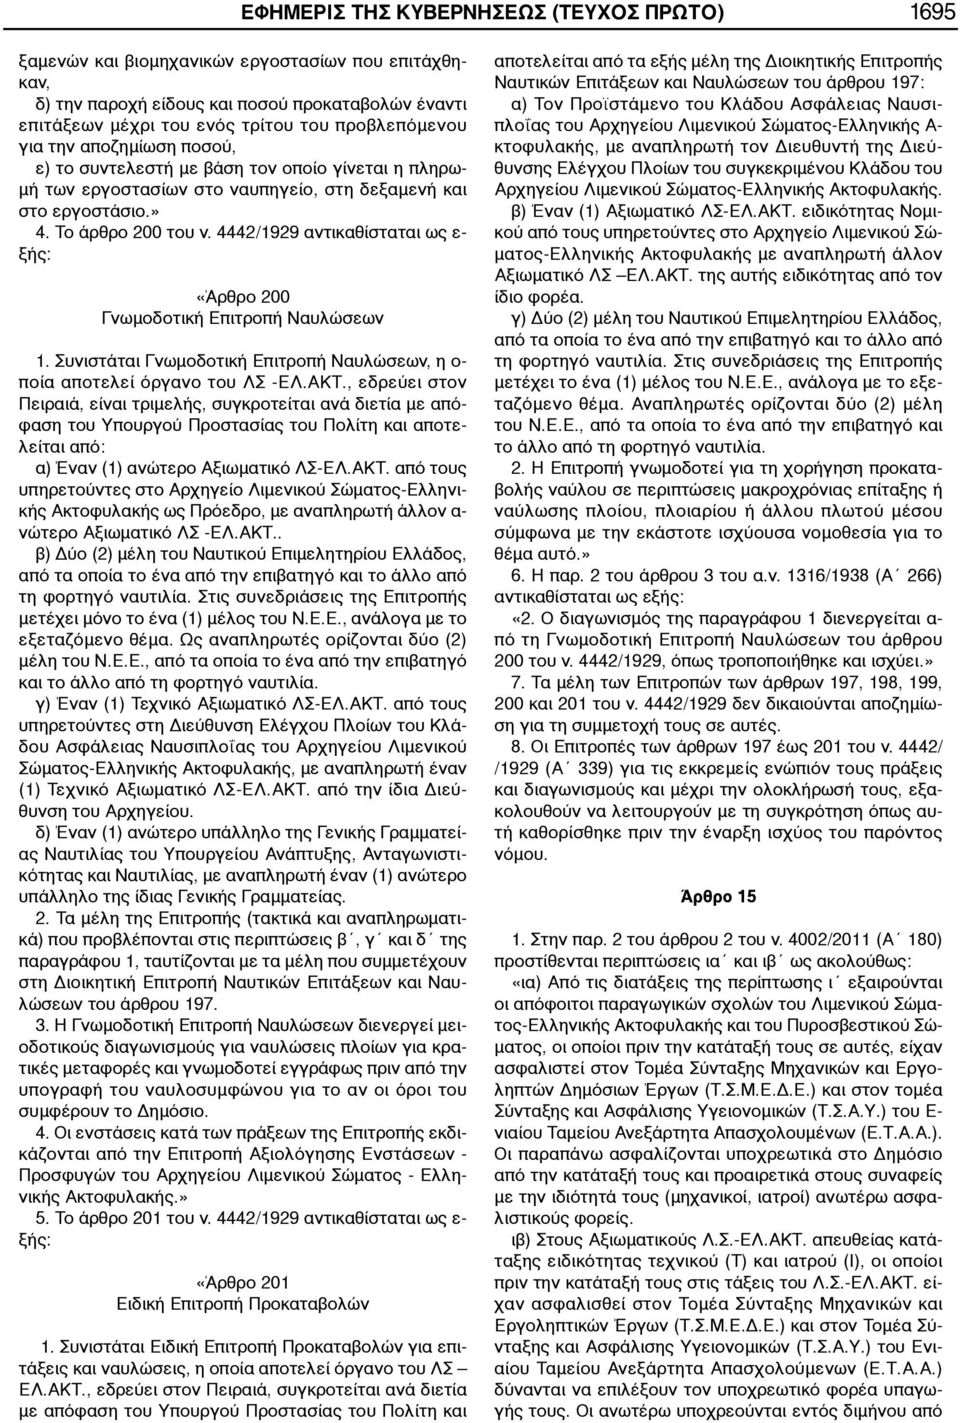 4442/1929 αντικαθίσταται ως ε- ξής: «Άρθρο 200 Γνωμοδοτική Επιτροπή Ναυλώσεων 1. Συνιστάται Γνωμοδοτική Επιτροπή Ναυλώσεων, η ο- ποία αποτελεί όργανο του ΛΣ -ΕΛ.ΑΚΤ.